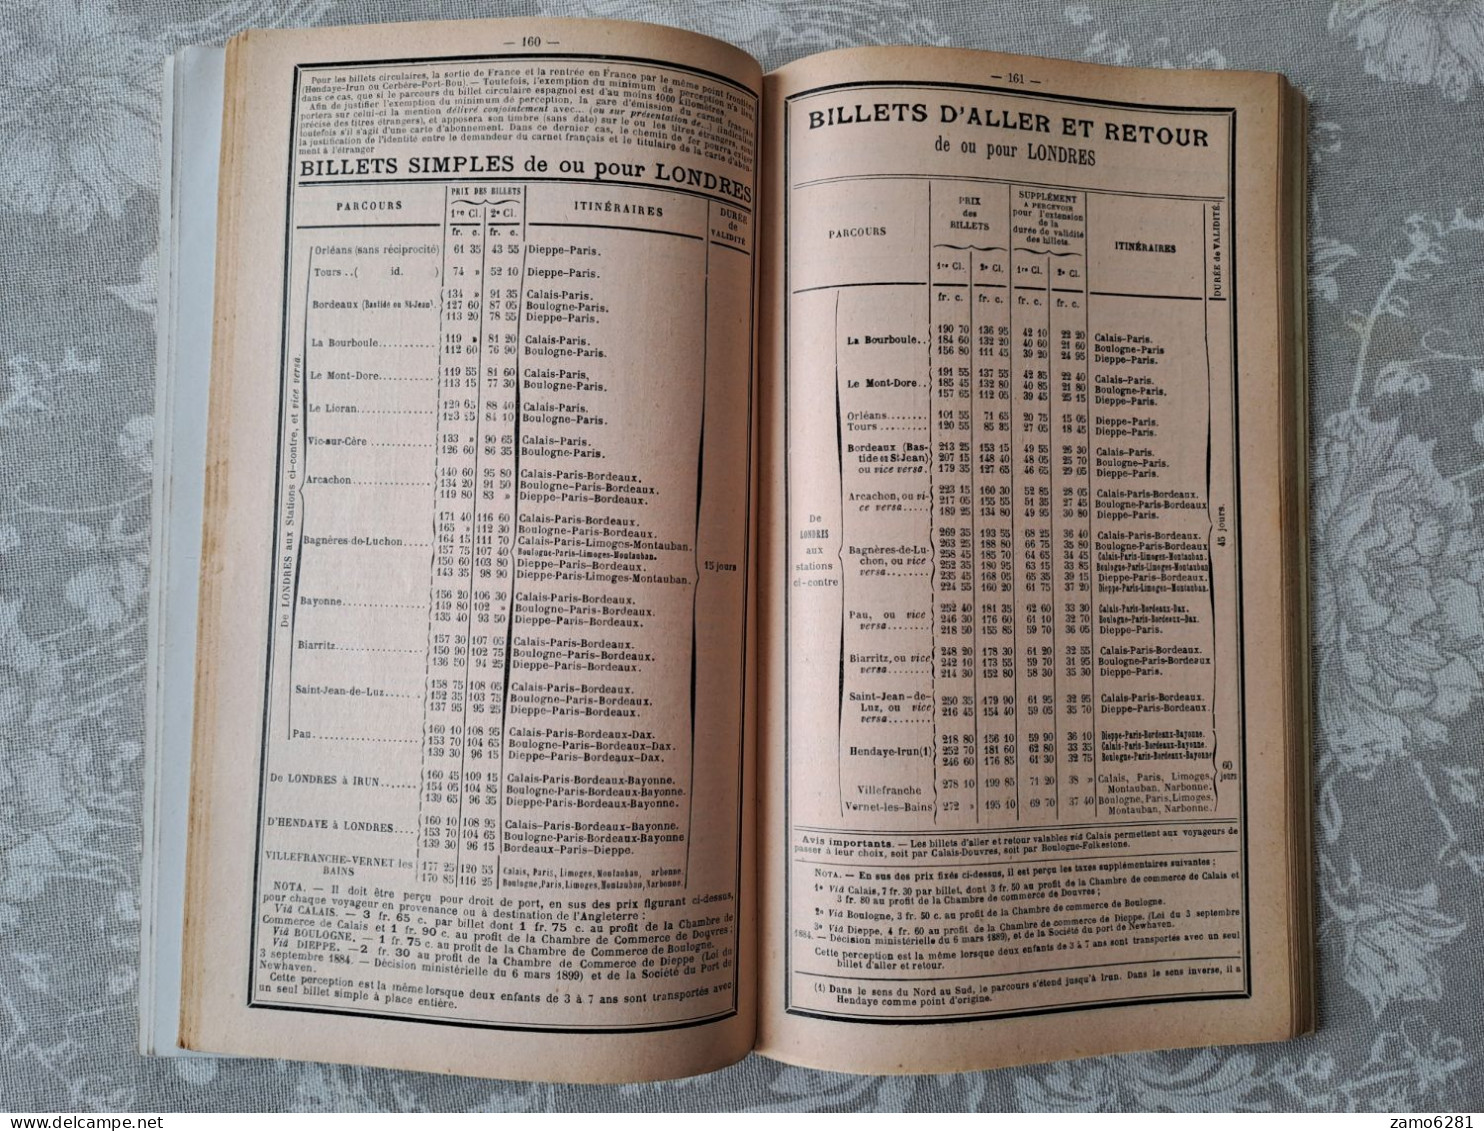 Livret-Guide Officiel des Chemins de Fer d'Orléans - 1908